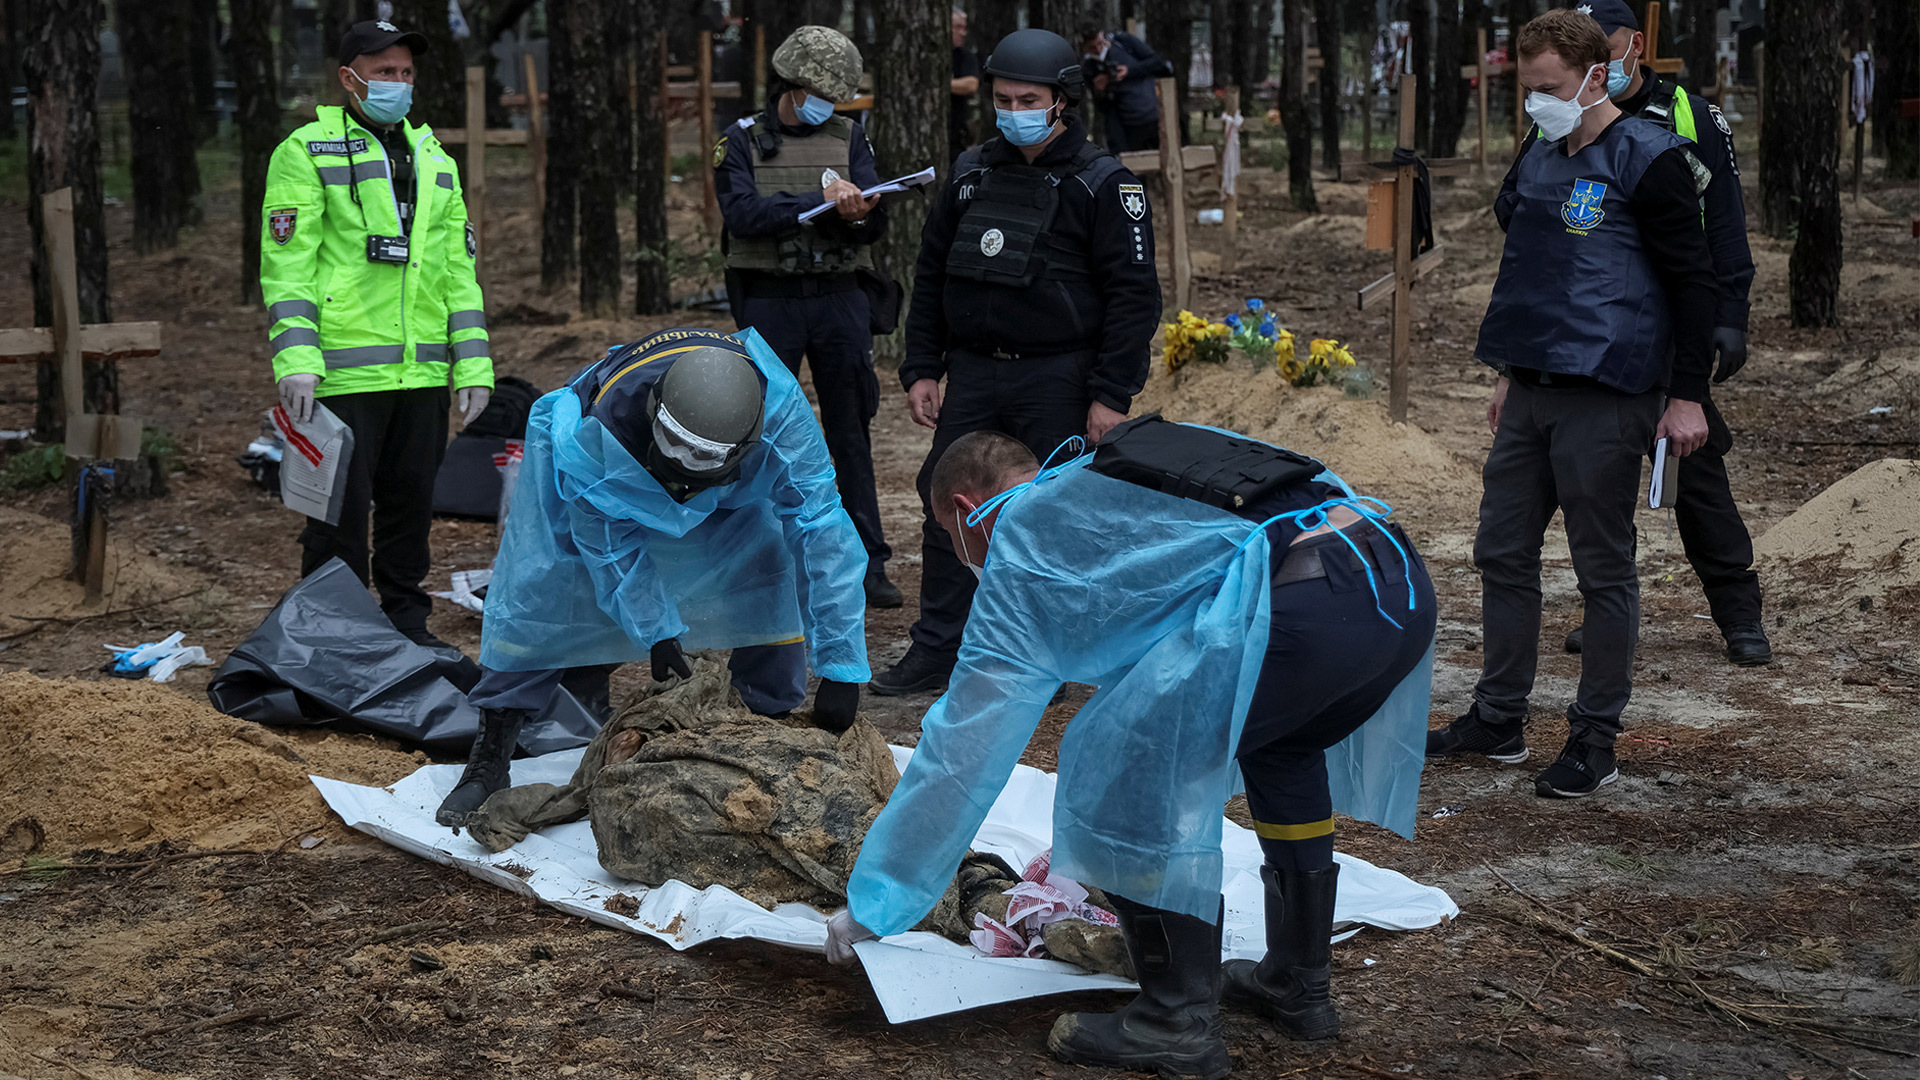 مقابر جماعية في أوكرانيا.. مطالب أوروبية بمحكمة دولية وزيلينسكي يؤكد اكتشاف أدلة التعذيب